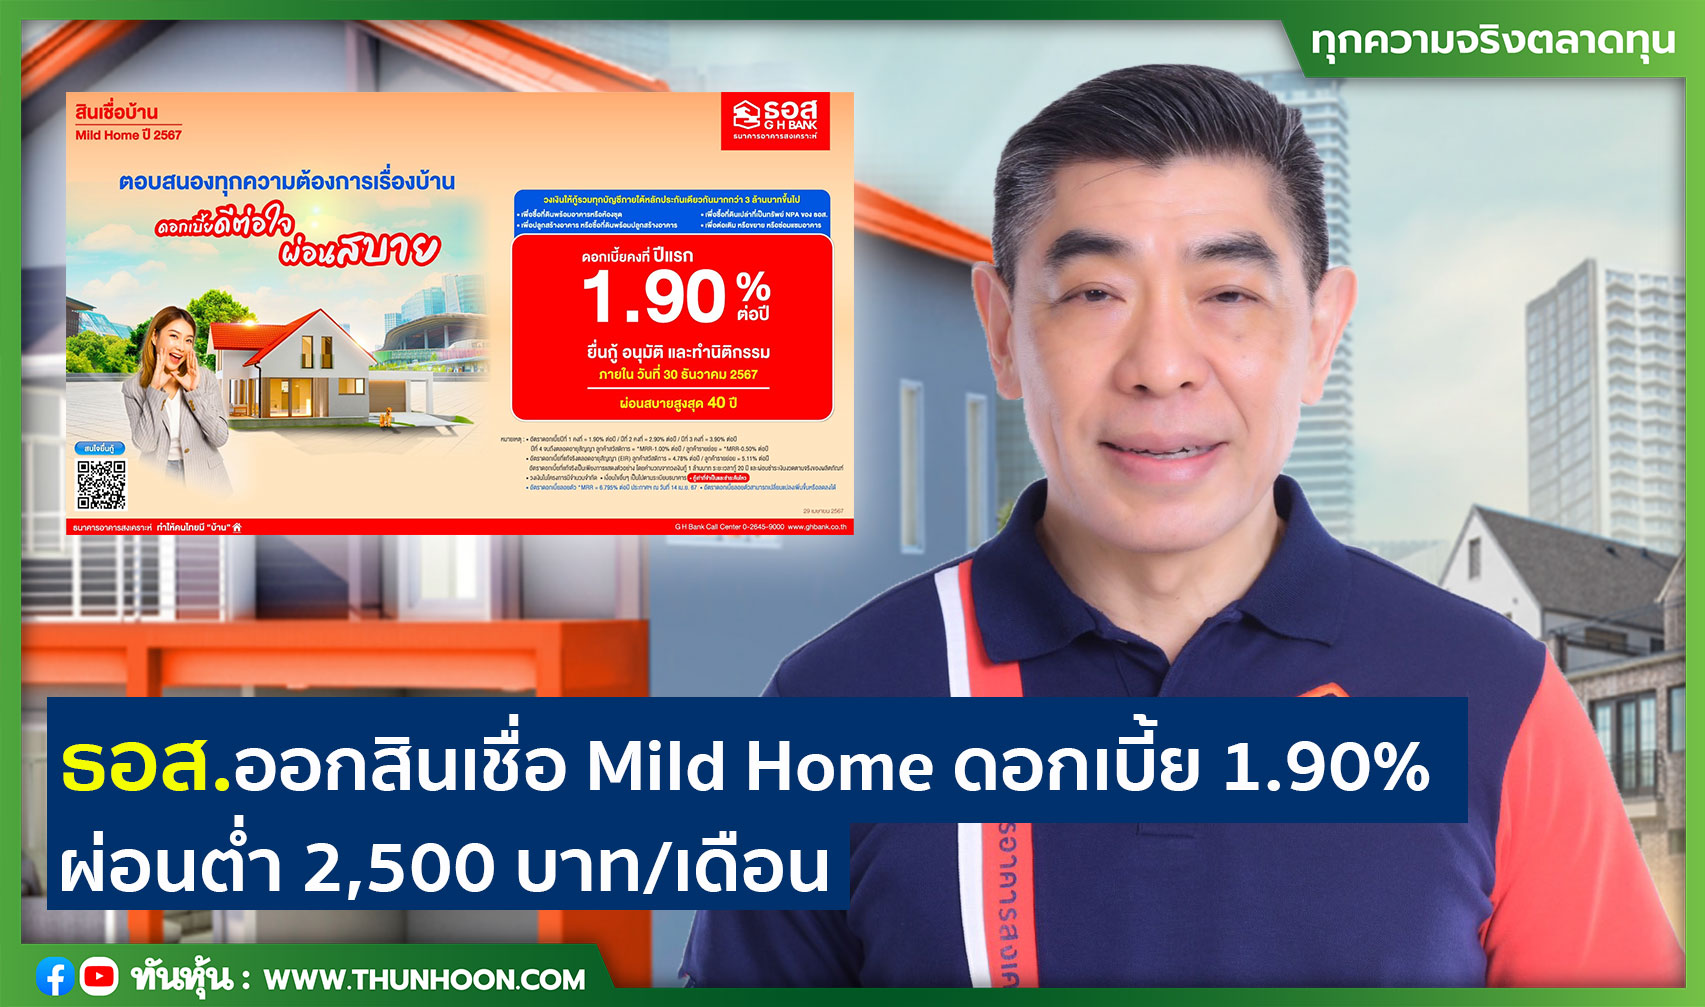 ธอส.ออกสินเชื่อ Mild Home ดอกเบี้ย 1.90% ผ่อนต่ำ 2,500 บาท/เดือน